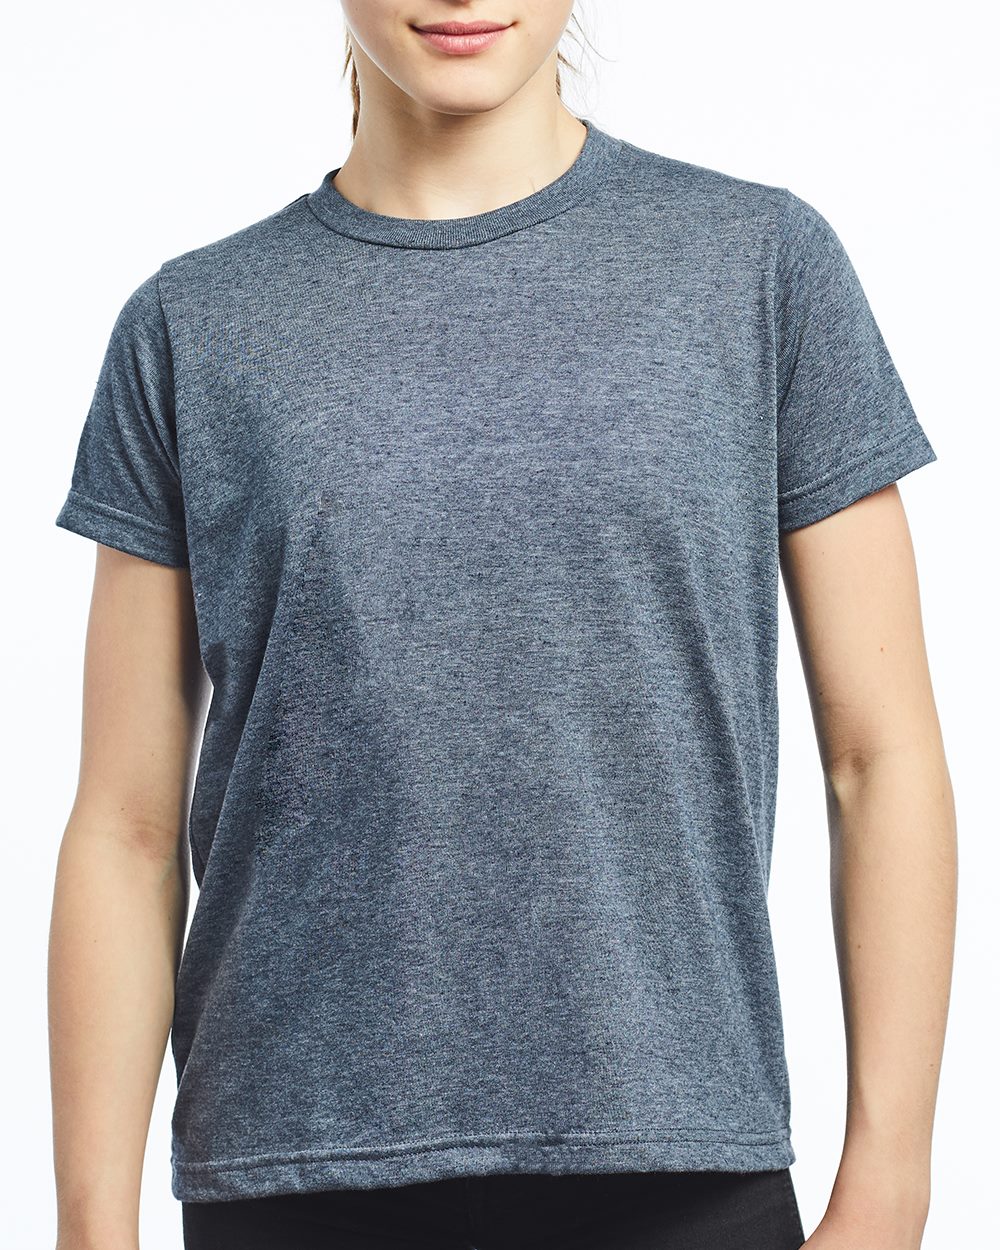 M&O 3542 Women's Fine Blend V-Neck T-shirt